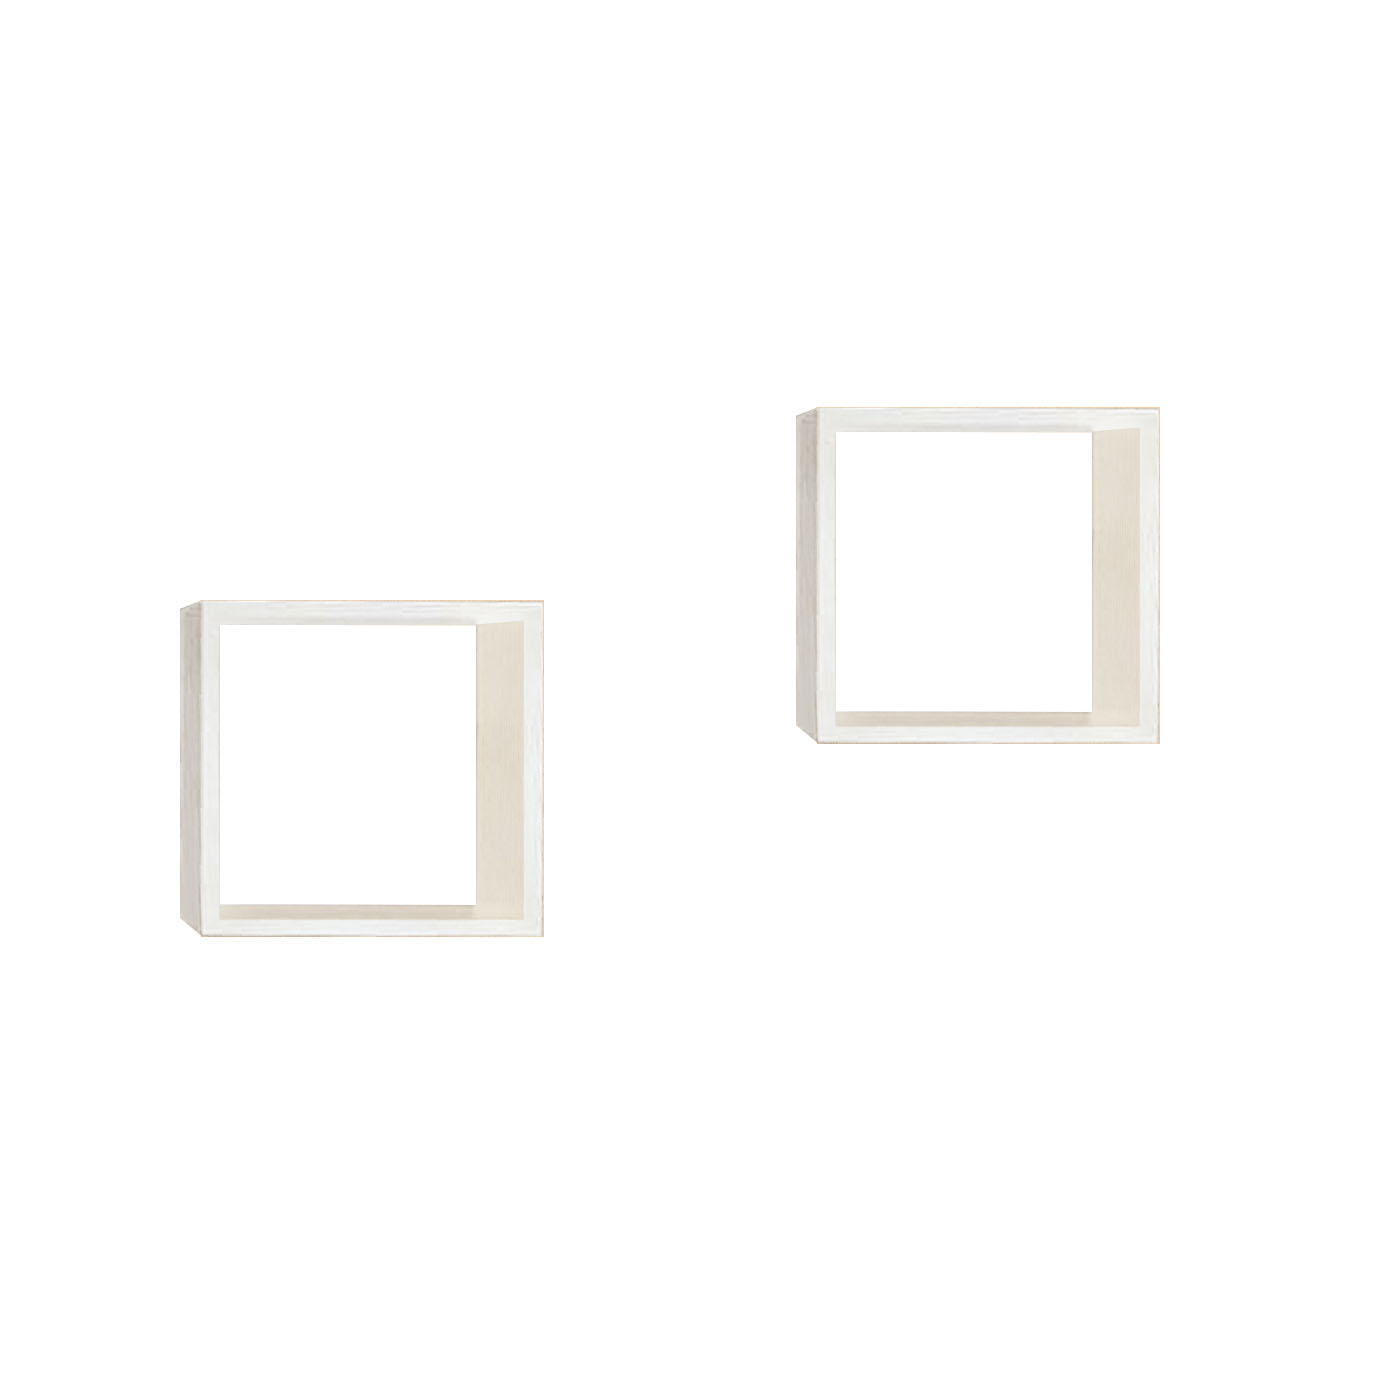 Bushwick White Cube Shelves, Set of Two